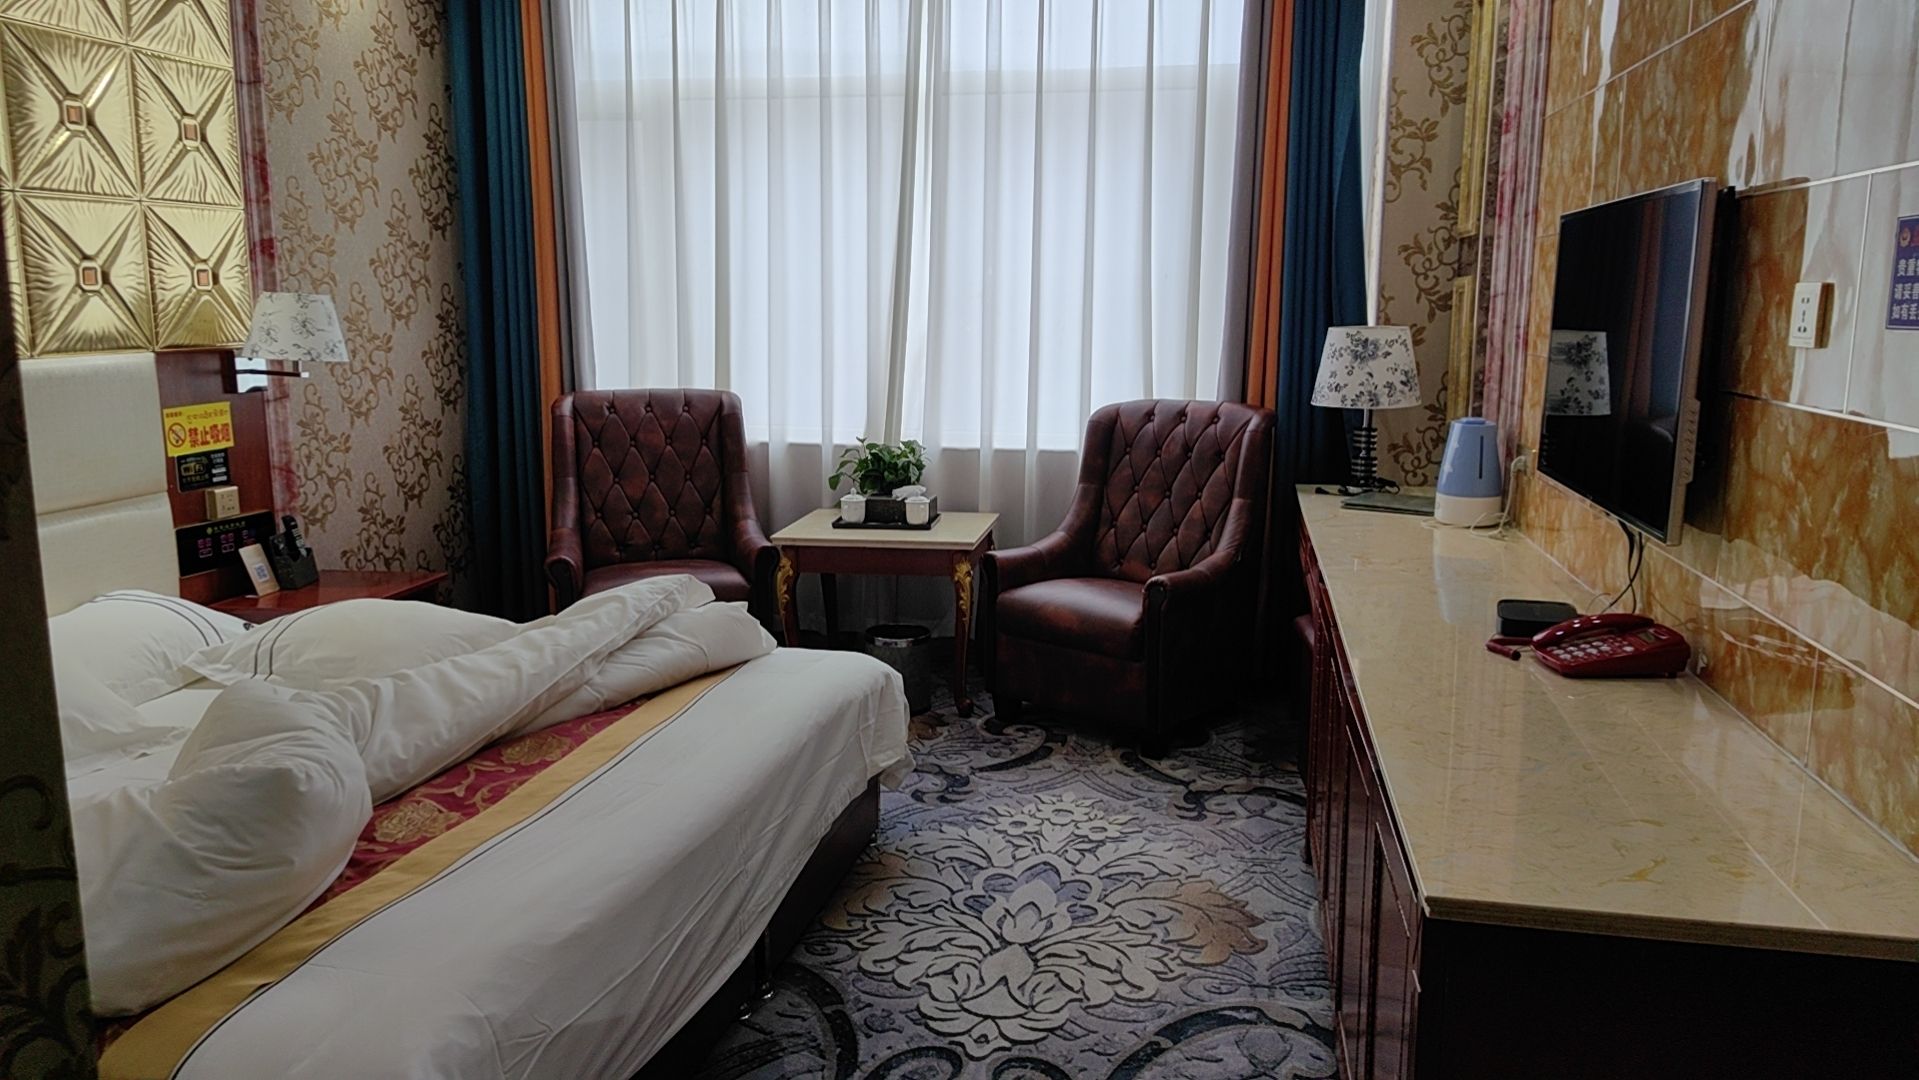 1、酒店虽然是老牌酒店，房间处理的挺干净，没有异味 2、酒店隔音效果也不错，挺温馨的，让我休息非常棒